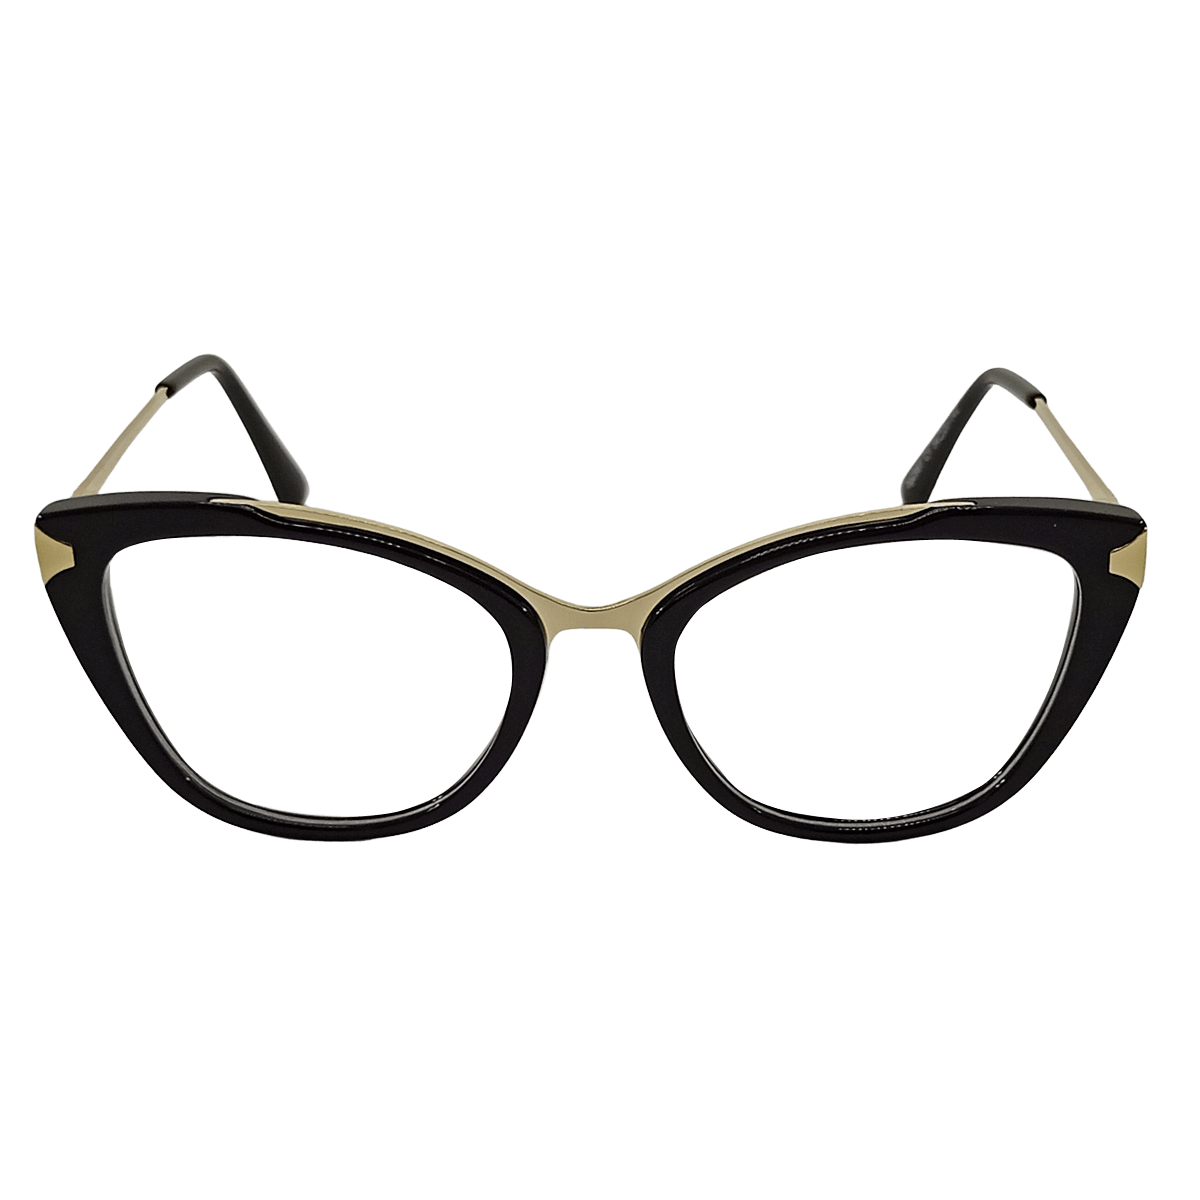 Buy Dior eyeglasses from Nine Optic.